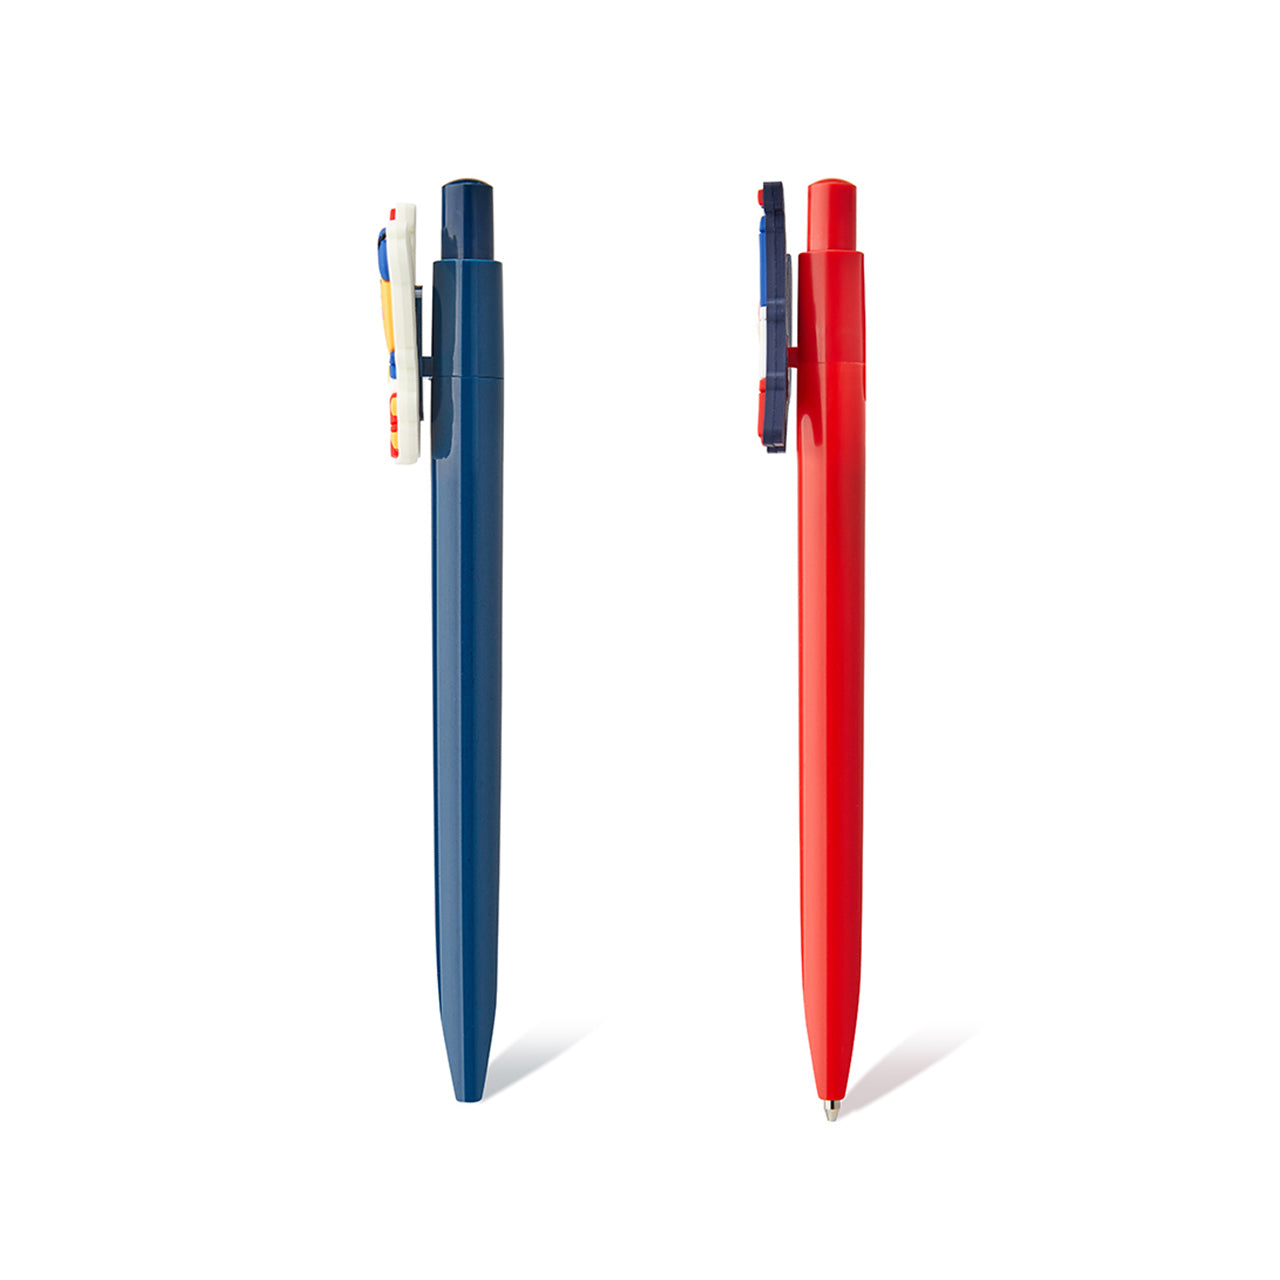 Paris Edition Pen Sets